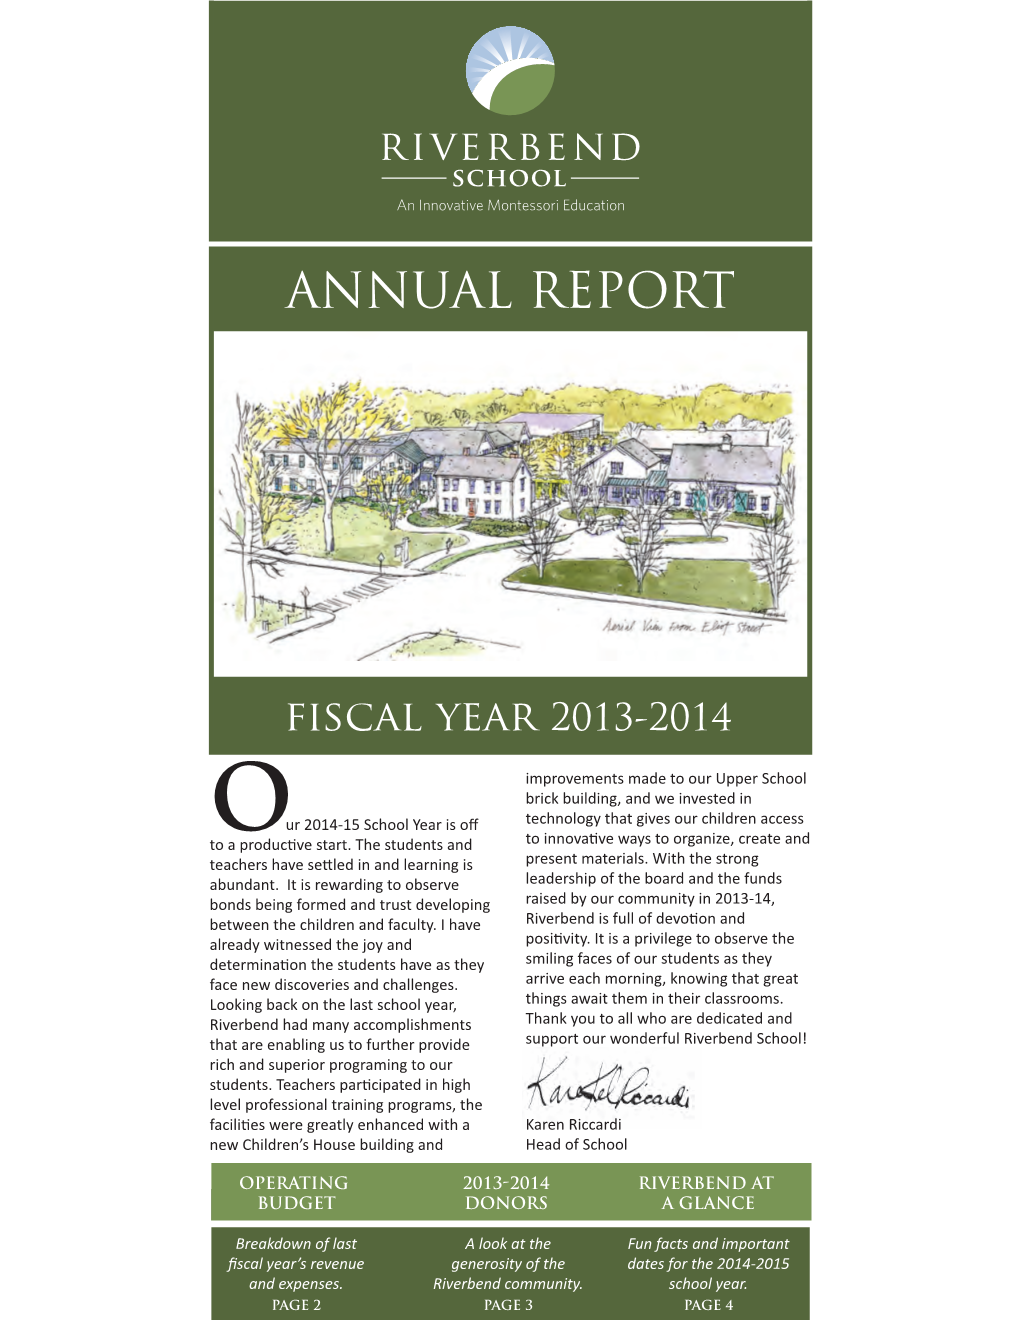 2013-2014 Annual Report KMB20141021